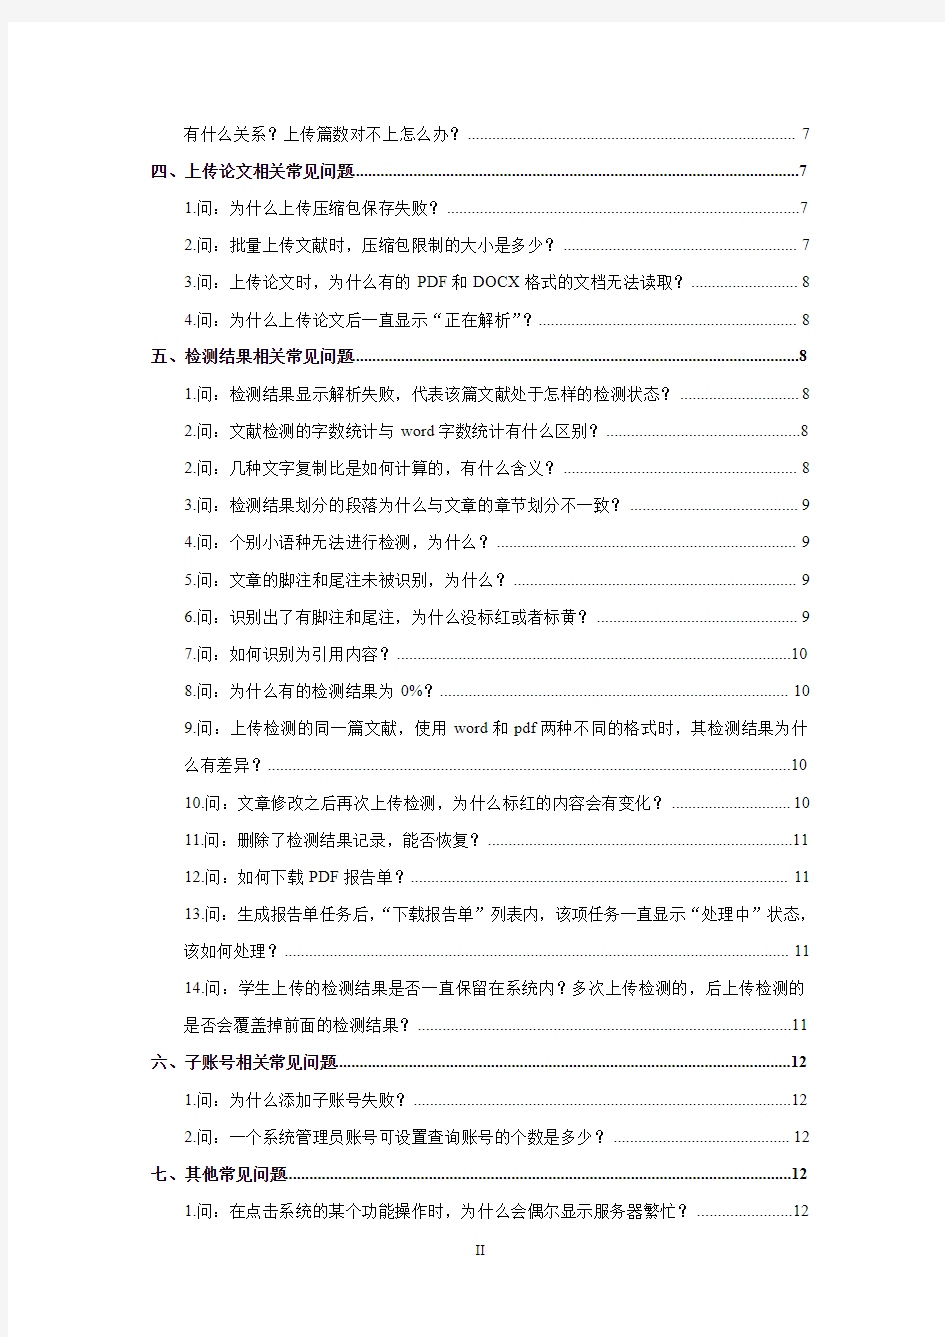 5-“中国知网”大学生论文管理系统(PMLC)常见问题解答